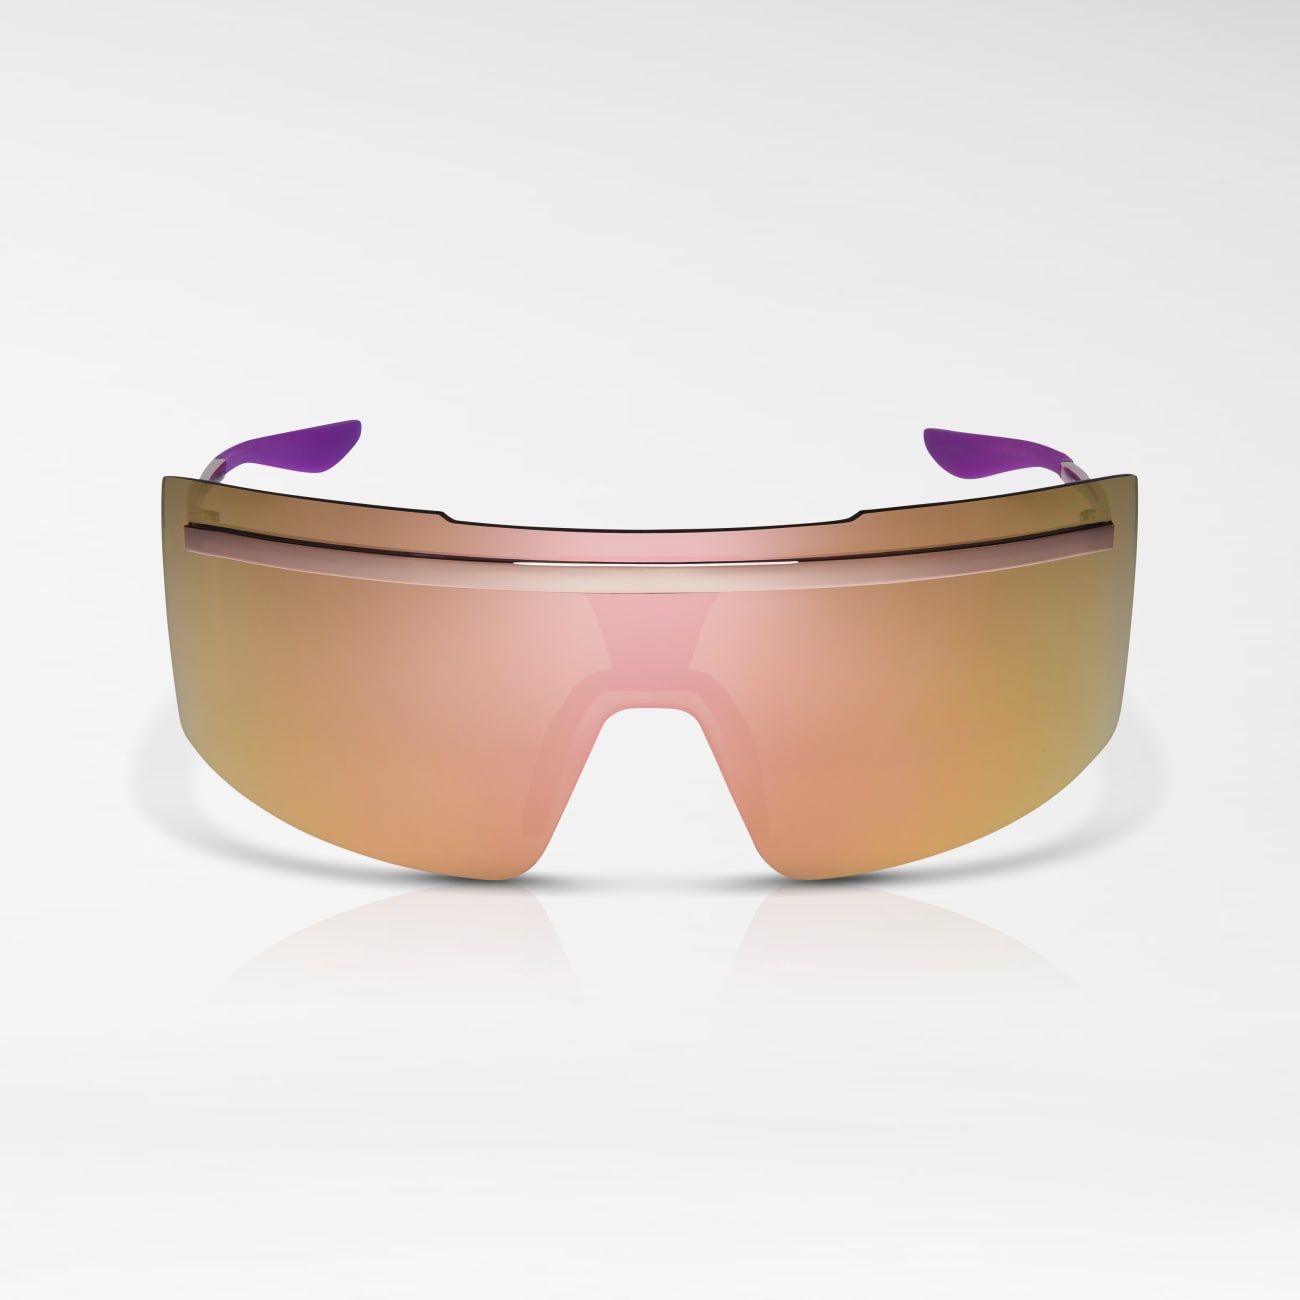 NIKE ECHO SHIELD | Sunglasses | Nike Vision